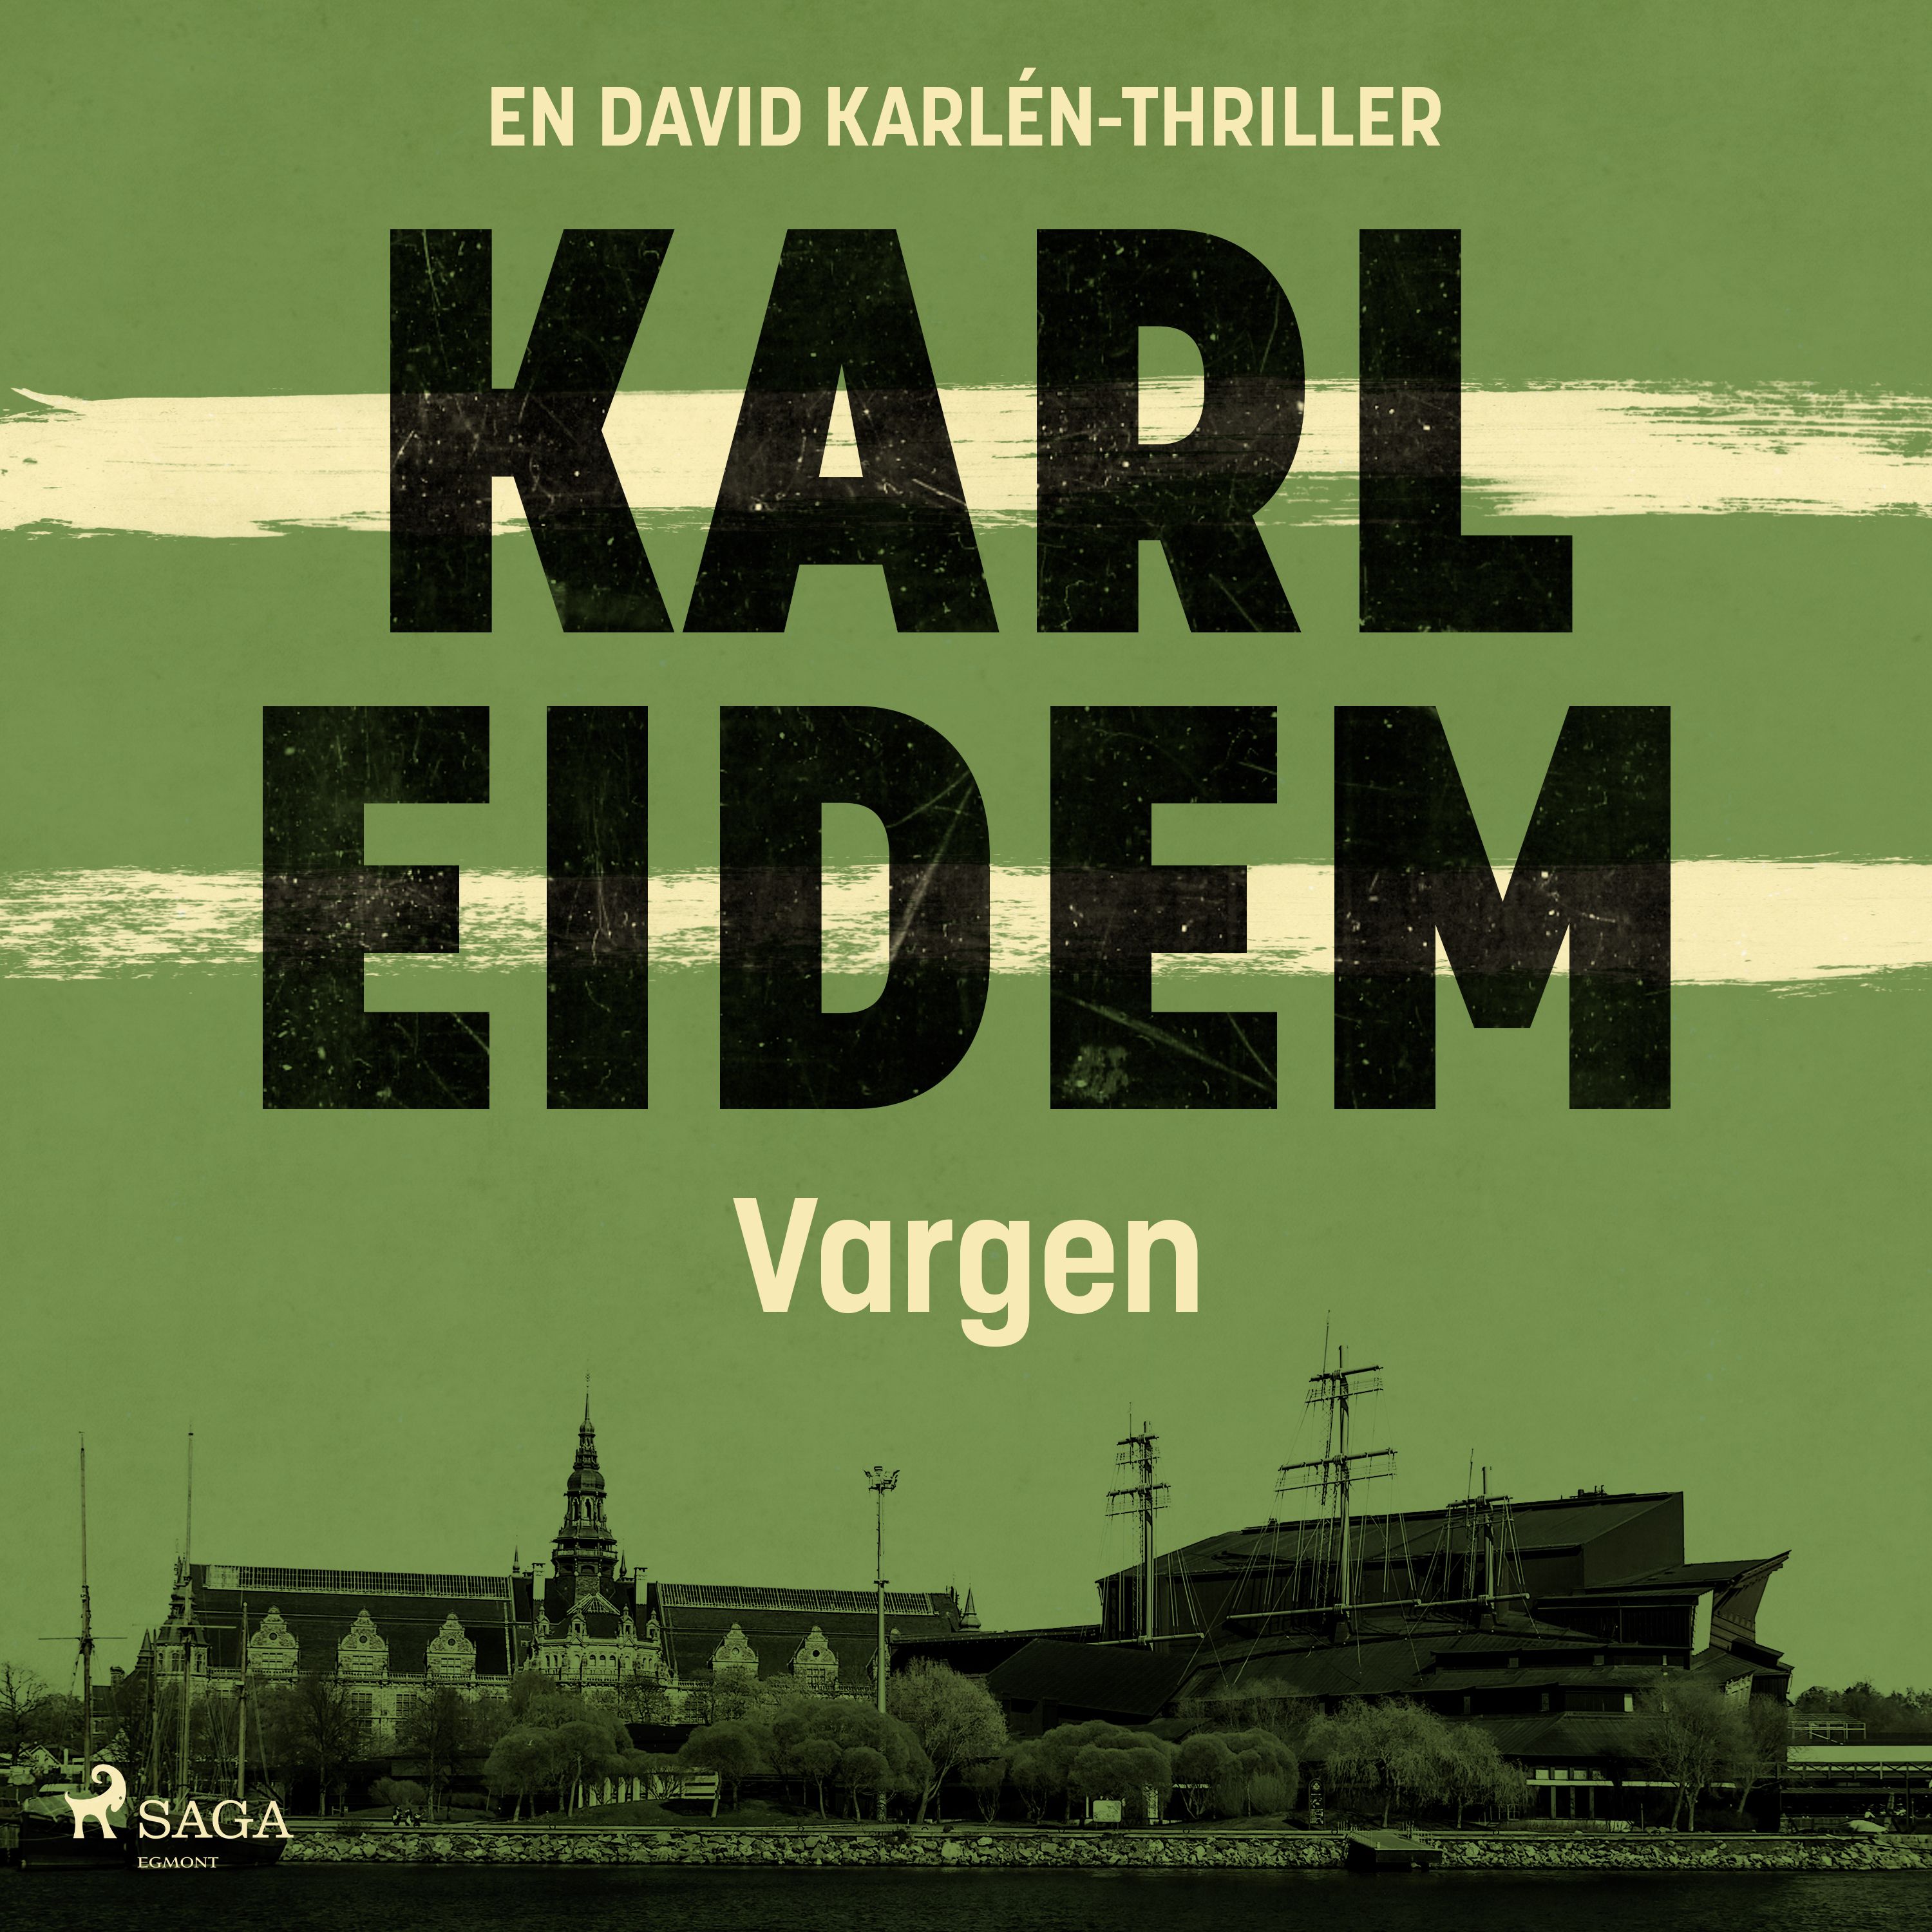 Vargen, ljudbok av Karl Eidem